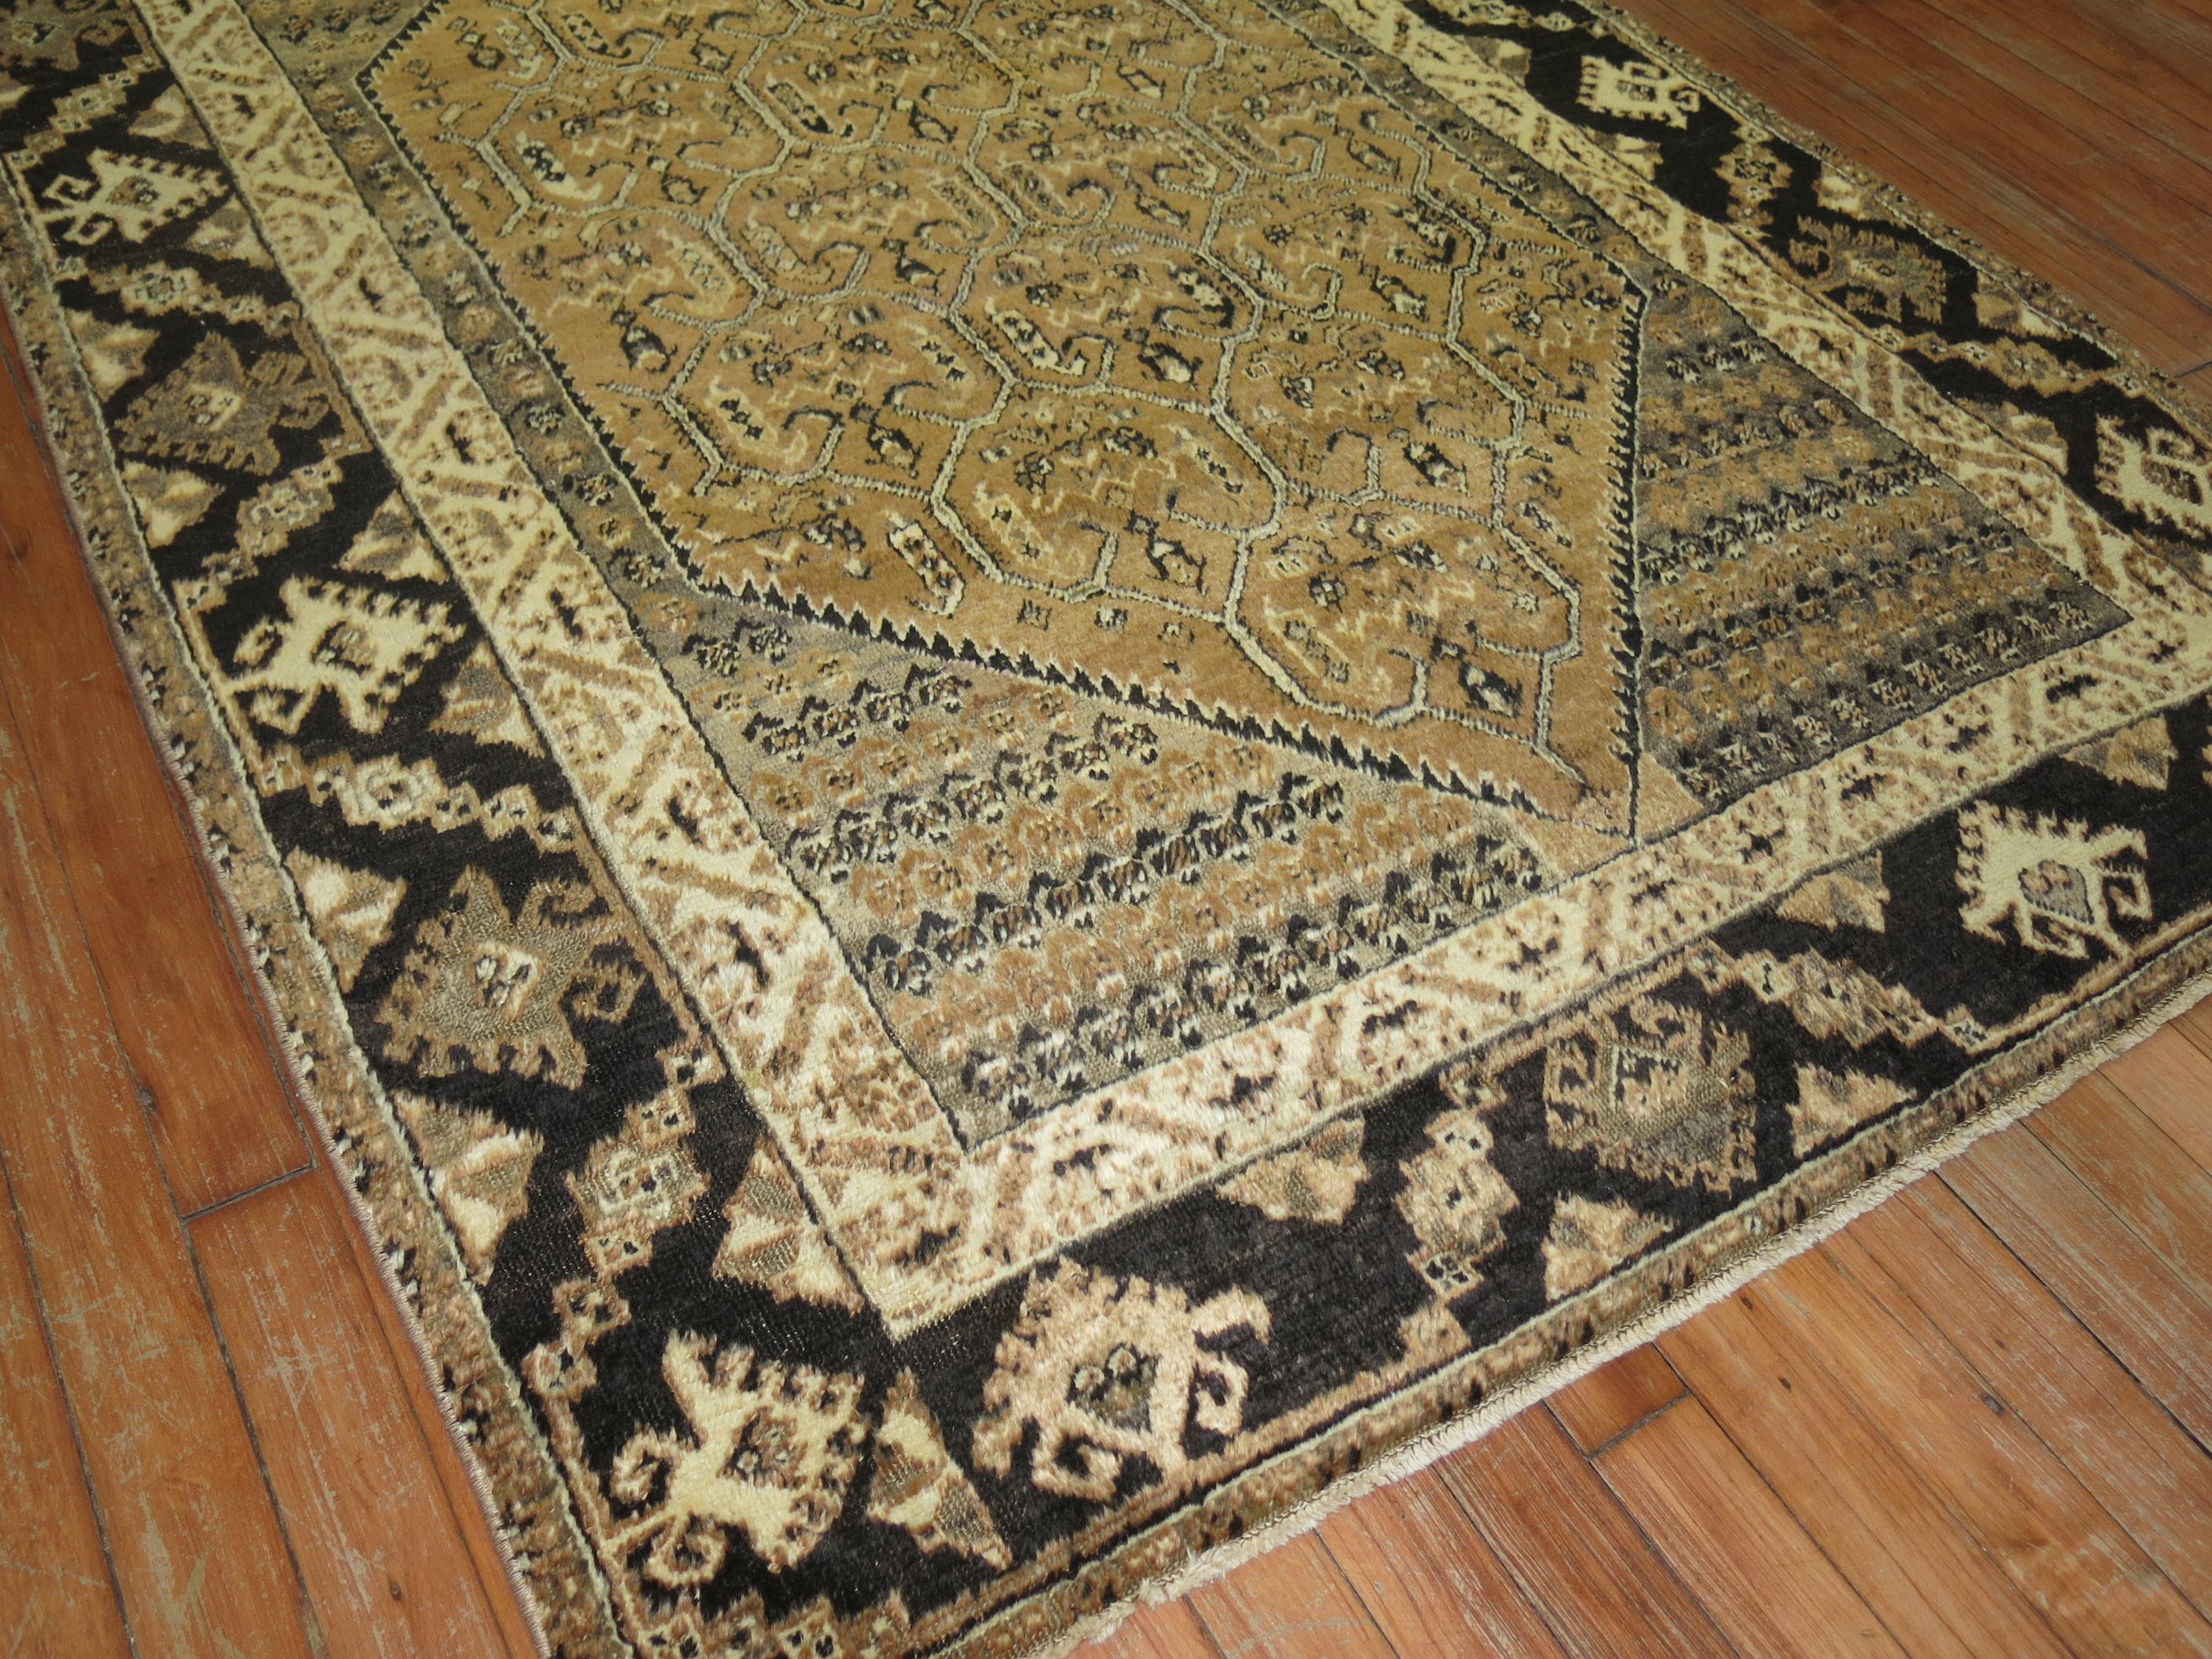 Caramel and brown color vintage Turkish rug.